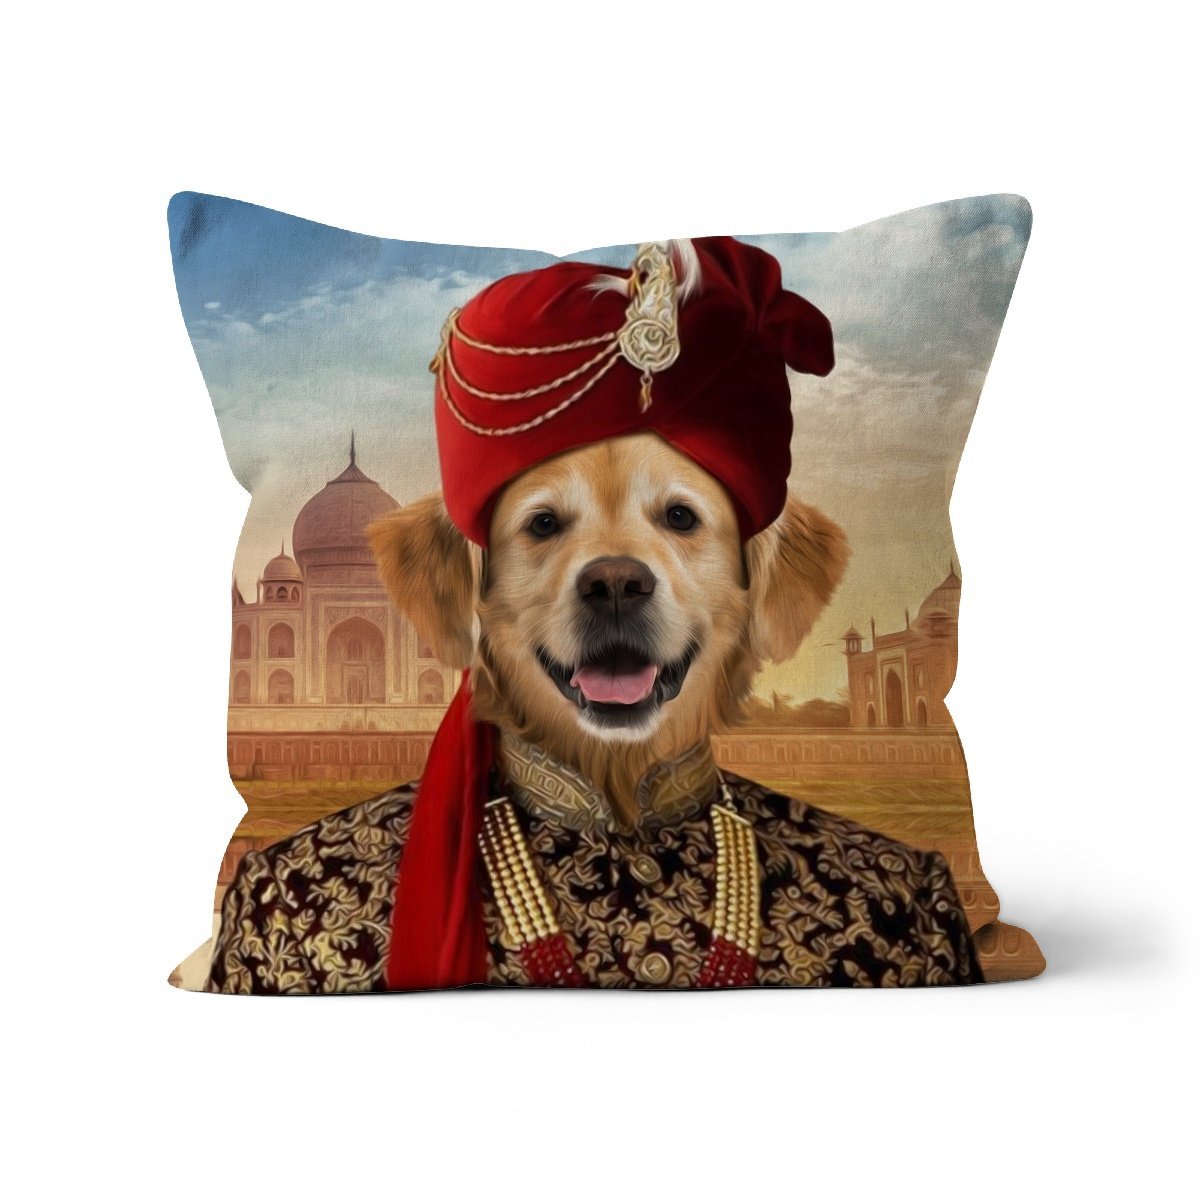 The Indian Raja: Custom Pet Cushion - Paw & Glory - #pet portraits# - #dog portraits# - #pet portraits uk#paw and glory, custom pet portrait cushion,pillow personalized, pet face pillows, dog photo on pillow, pet custom pillow, pillows with dogs picture